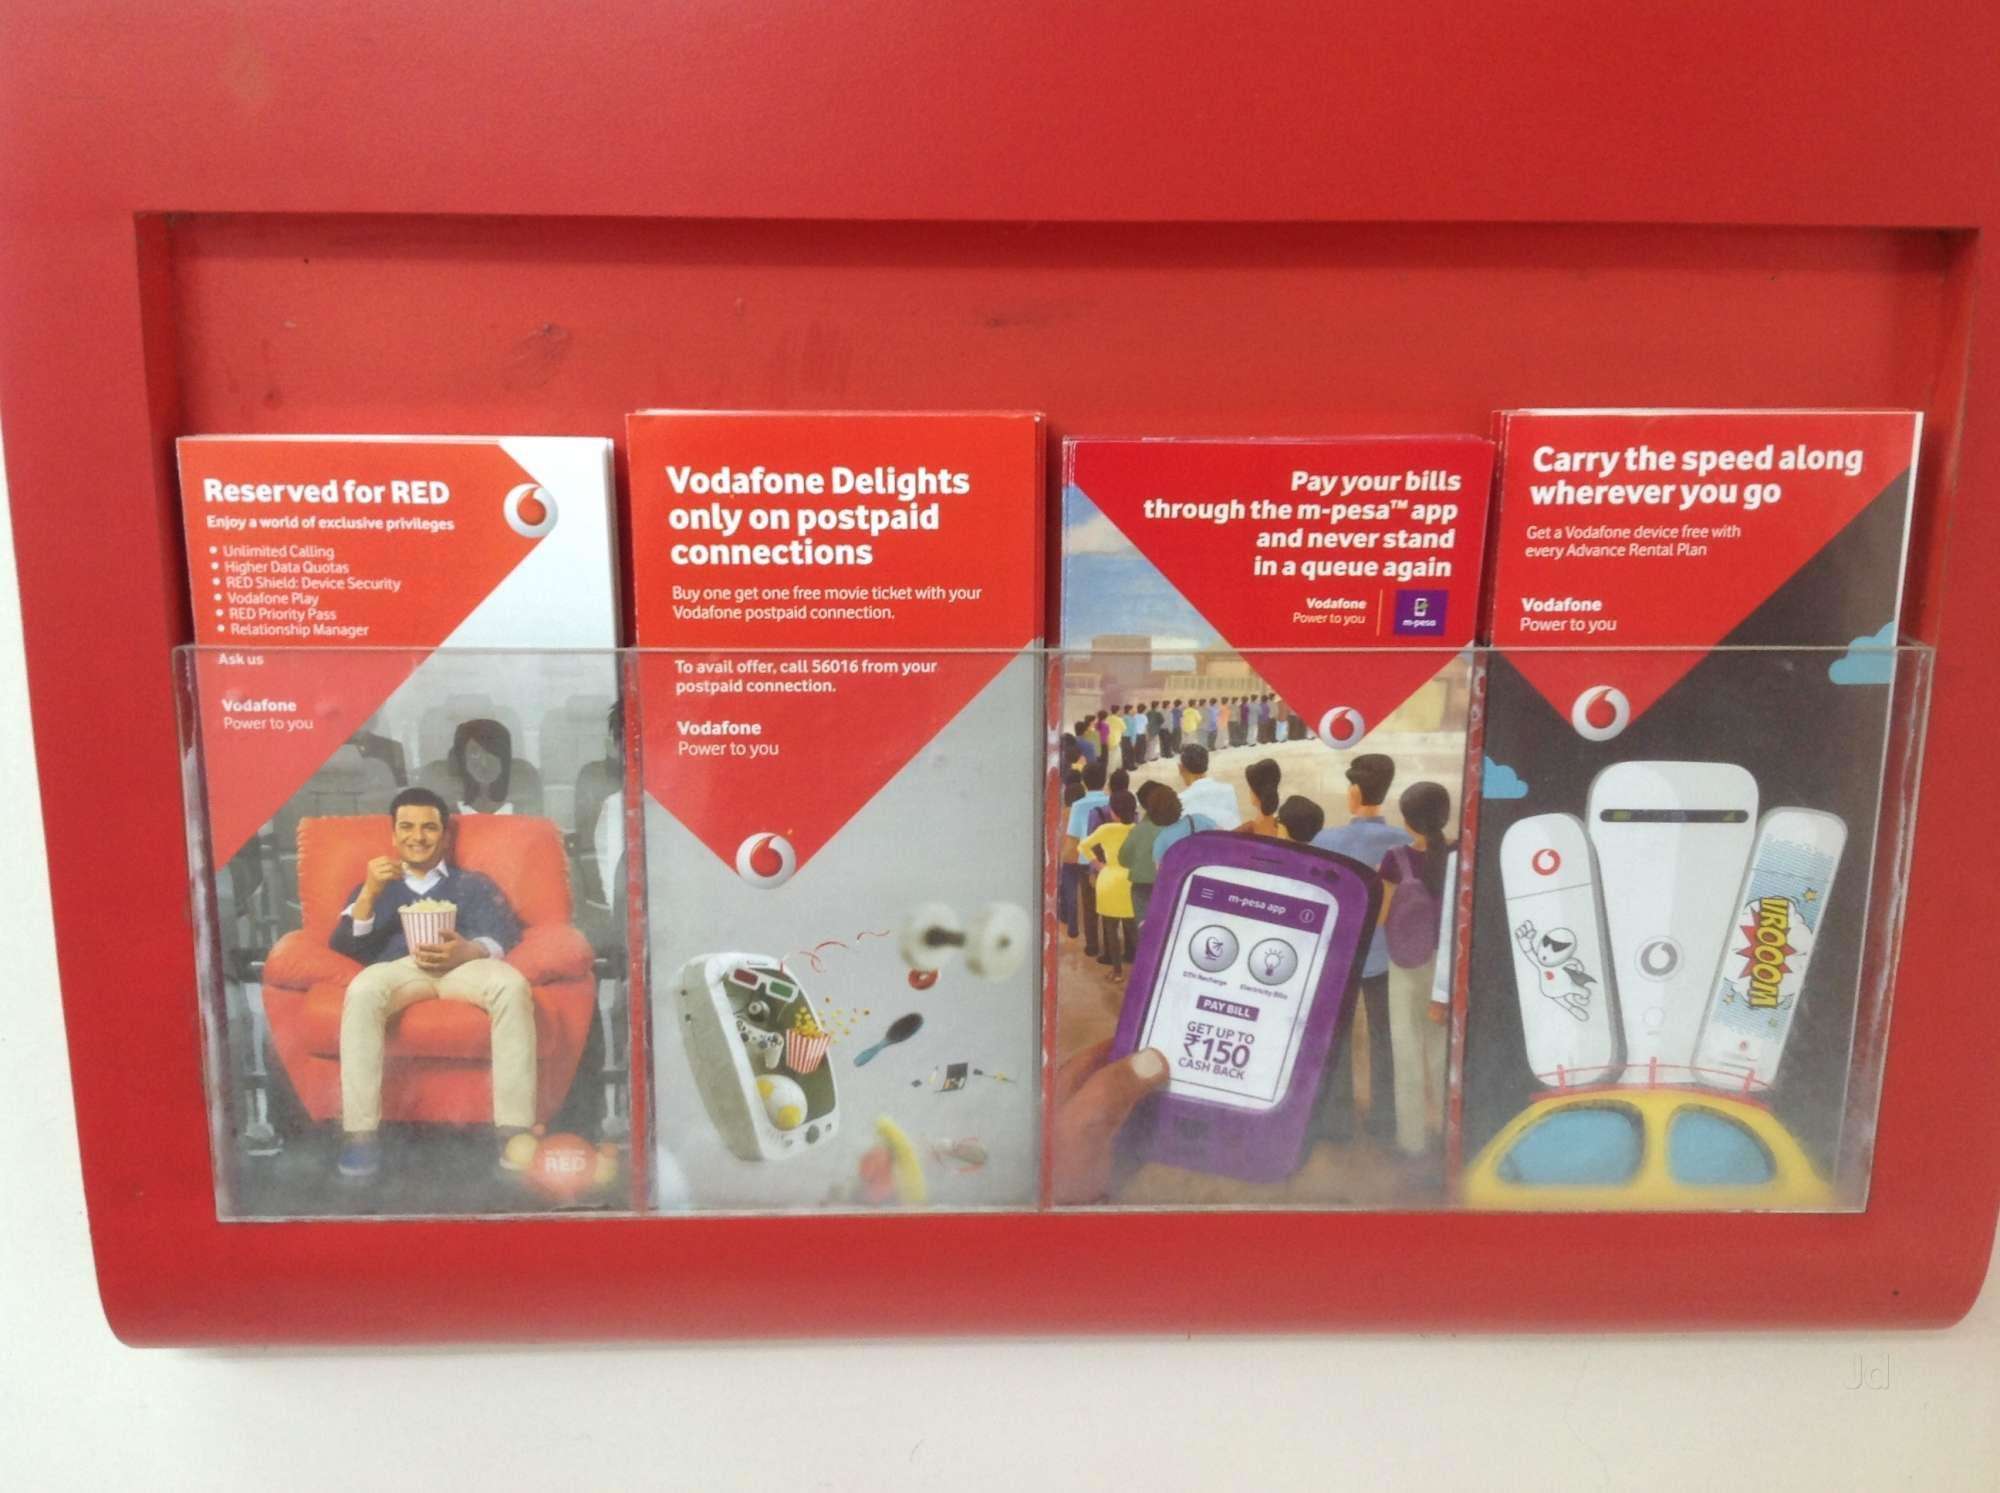 Vodafone ने लॉन्च किया 299 रूपये का नया प्रीपेड प्लान